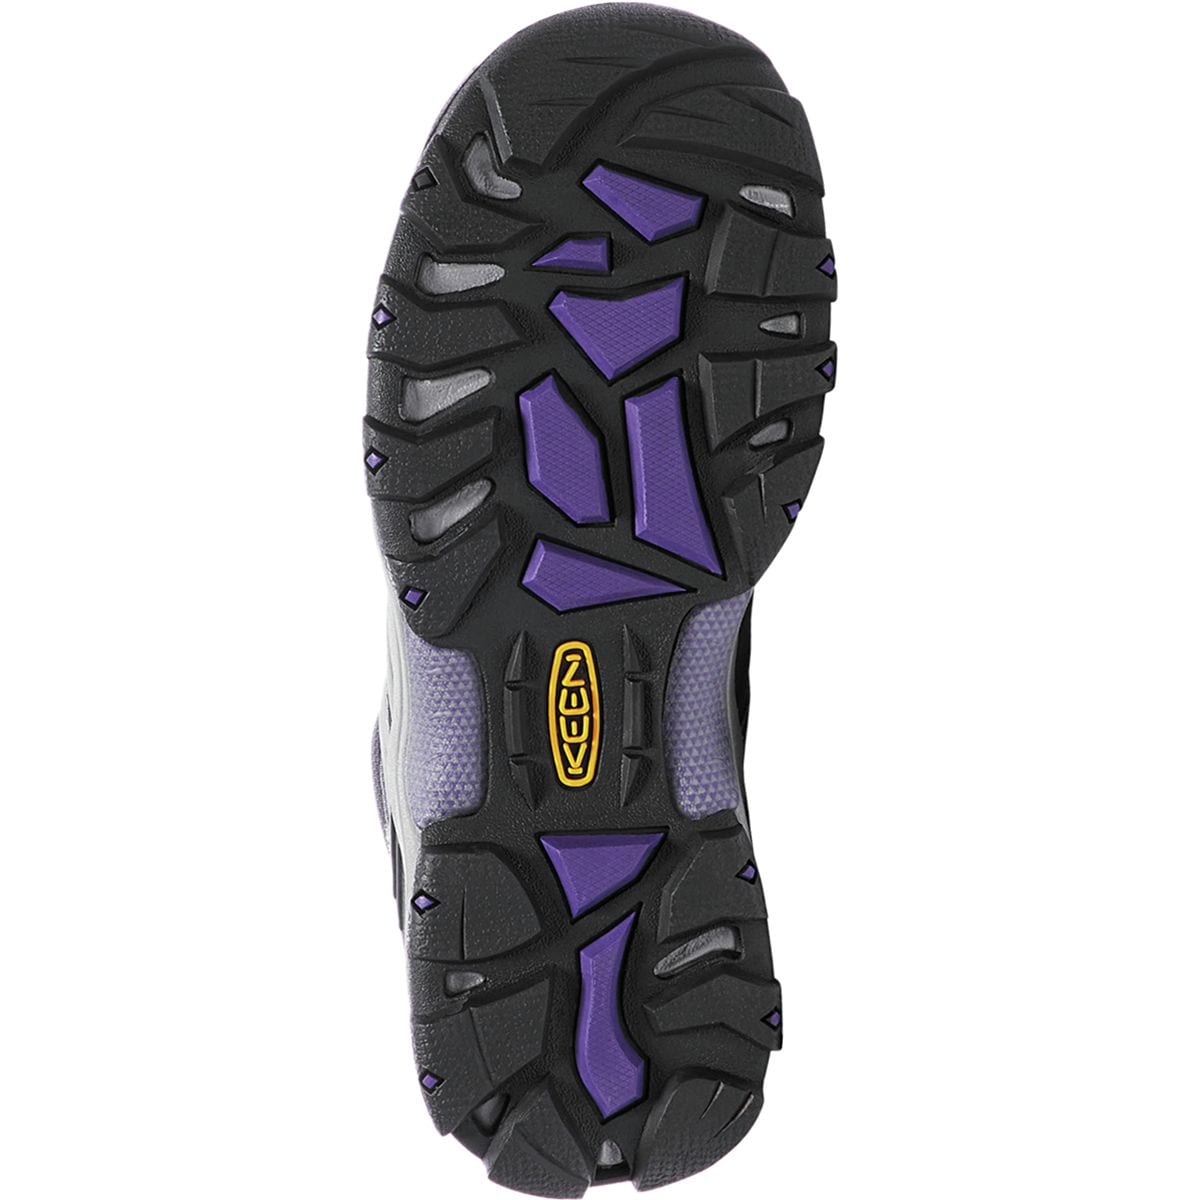 KEEN Gypsum II Mid Waterproof Hiking Boot - Women's - Footwear